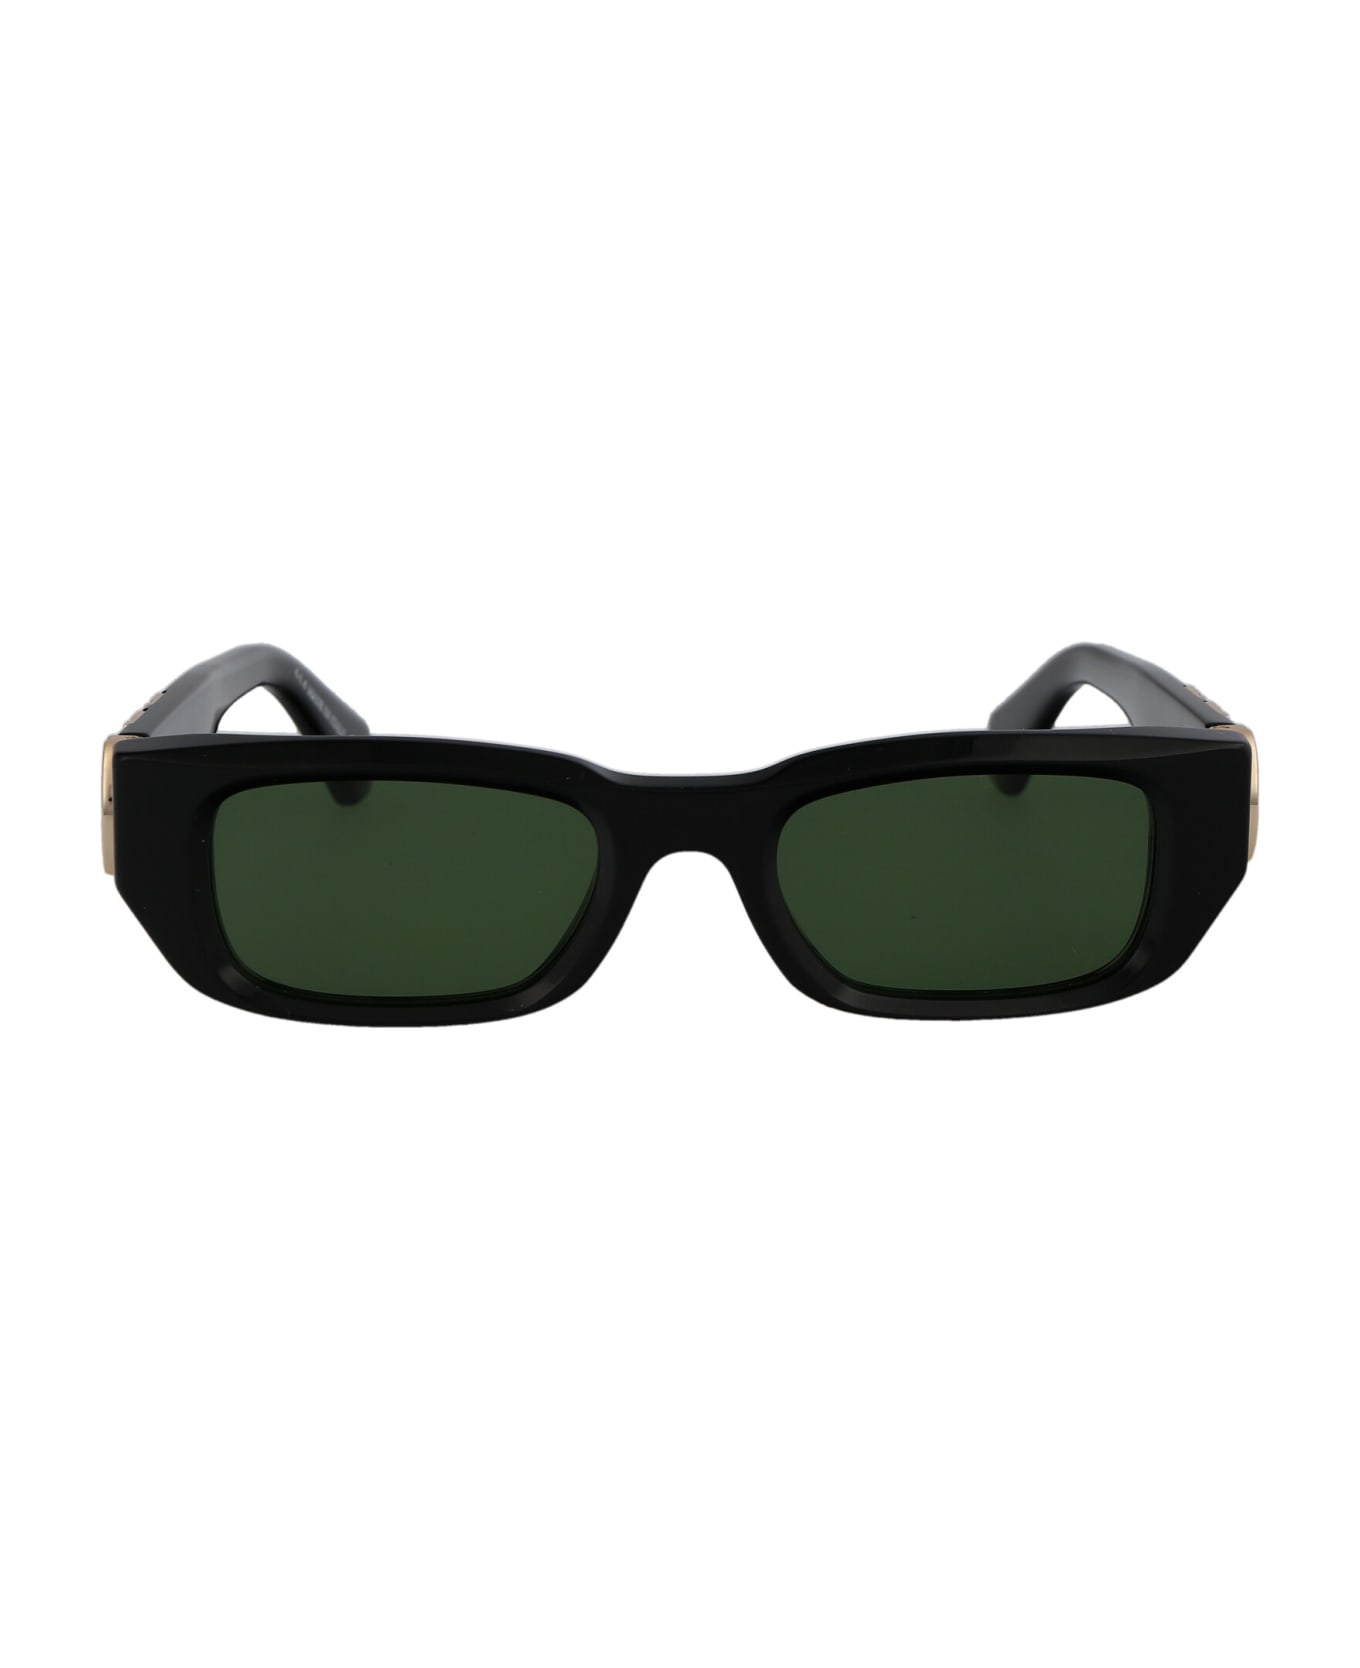 Off-White Fillmore Sunglasses - 1055 BLACK GREEN